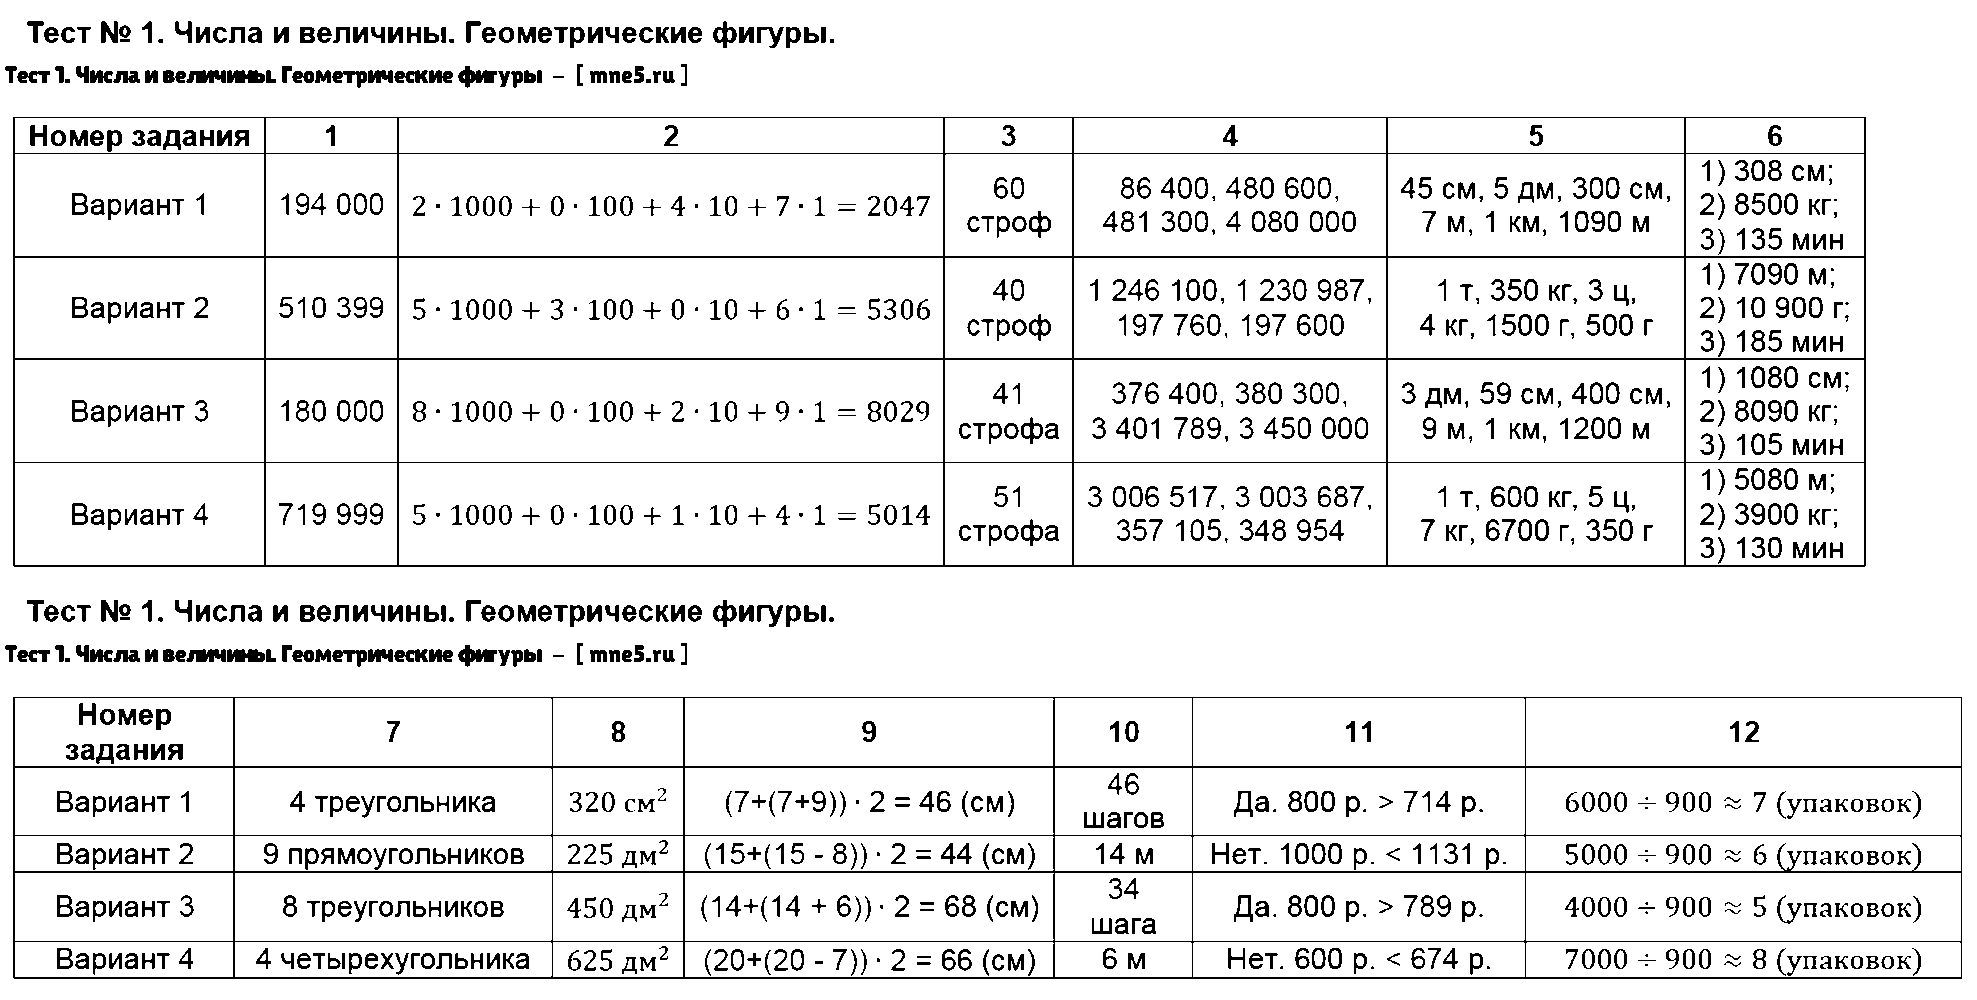 ГДЗ Математика 5 класс - Тест 1. Числа и величины. Геометрические фигуры